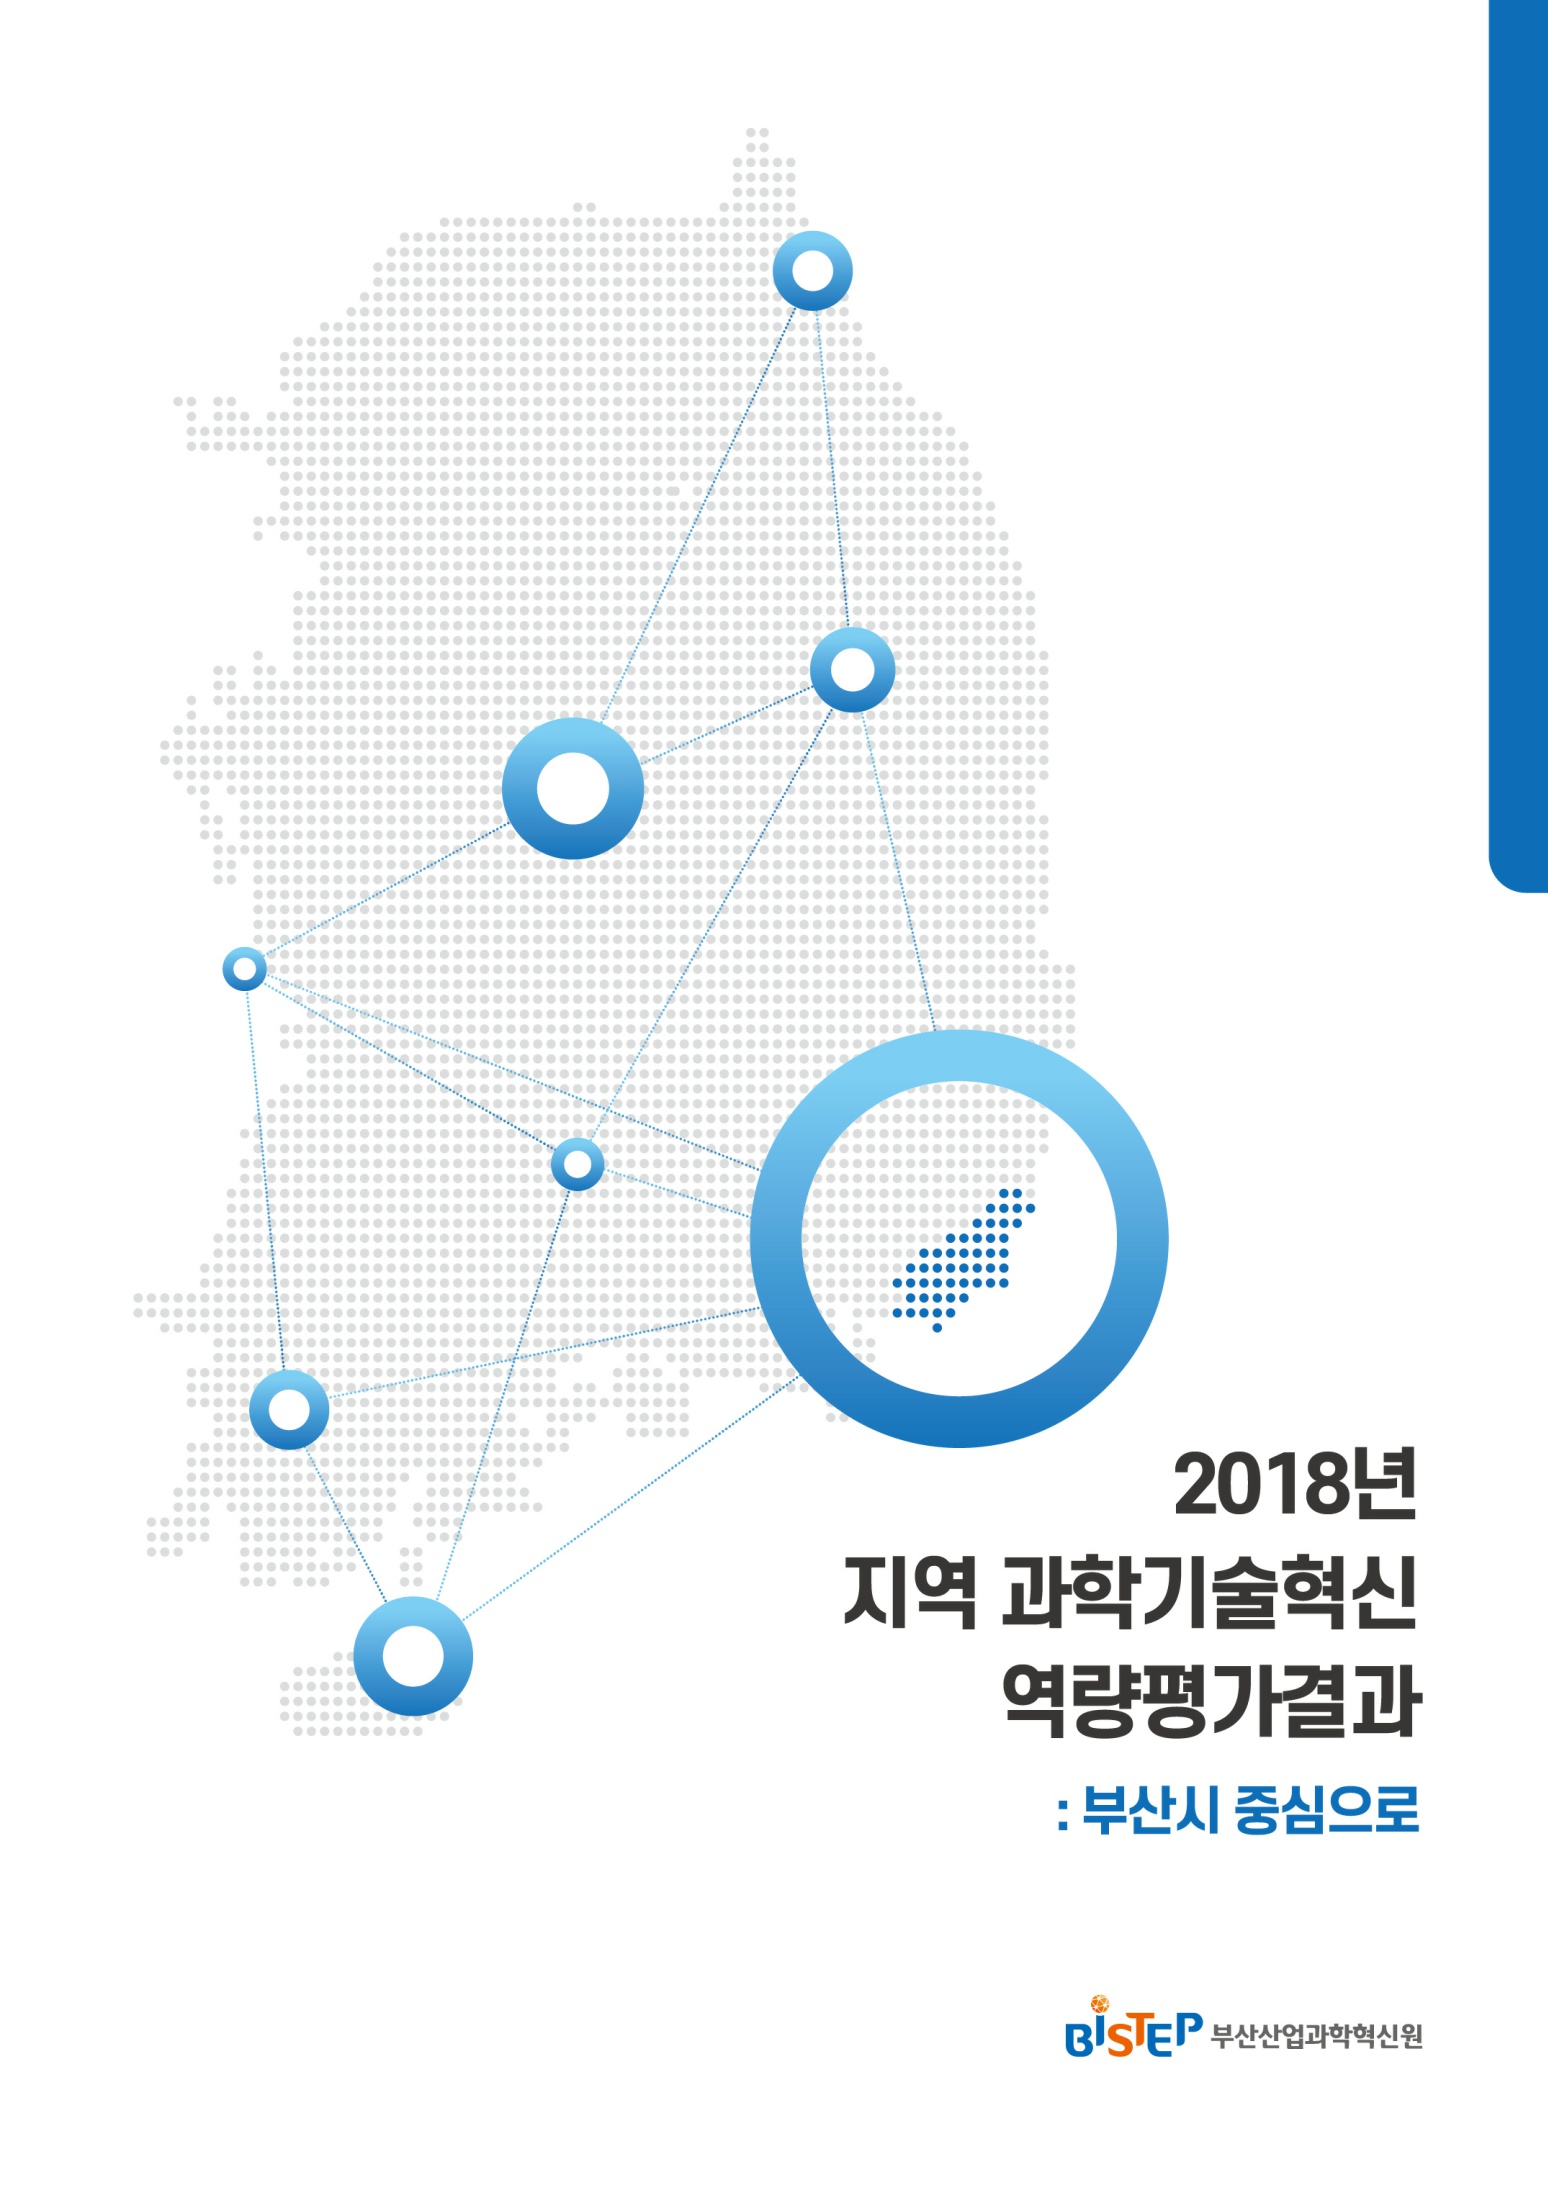 2019.08_2018년 지역과학기술혁신역량평가결과-부산시 중심으로_1.jpg